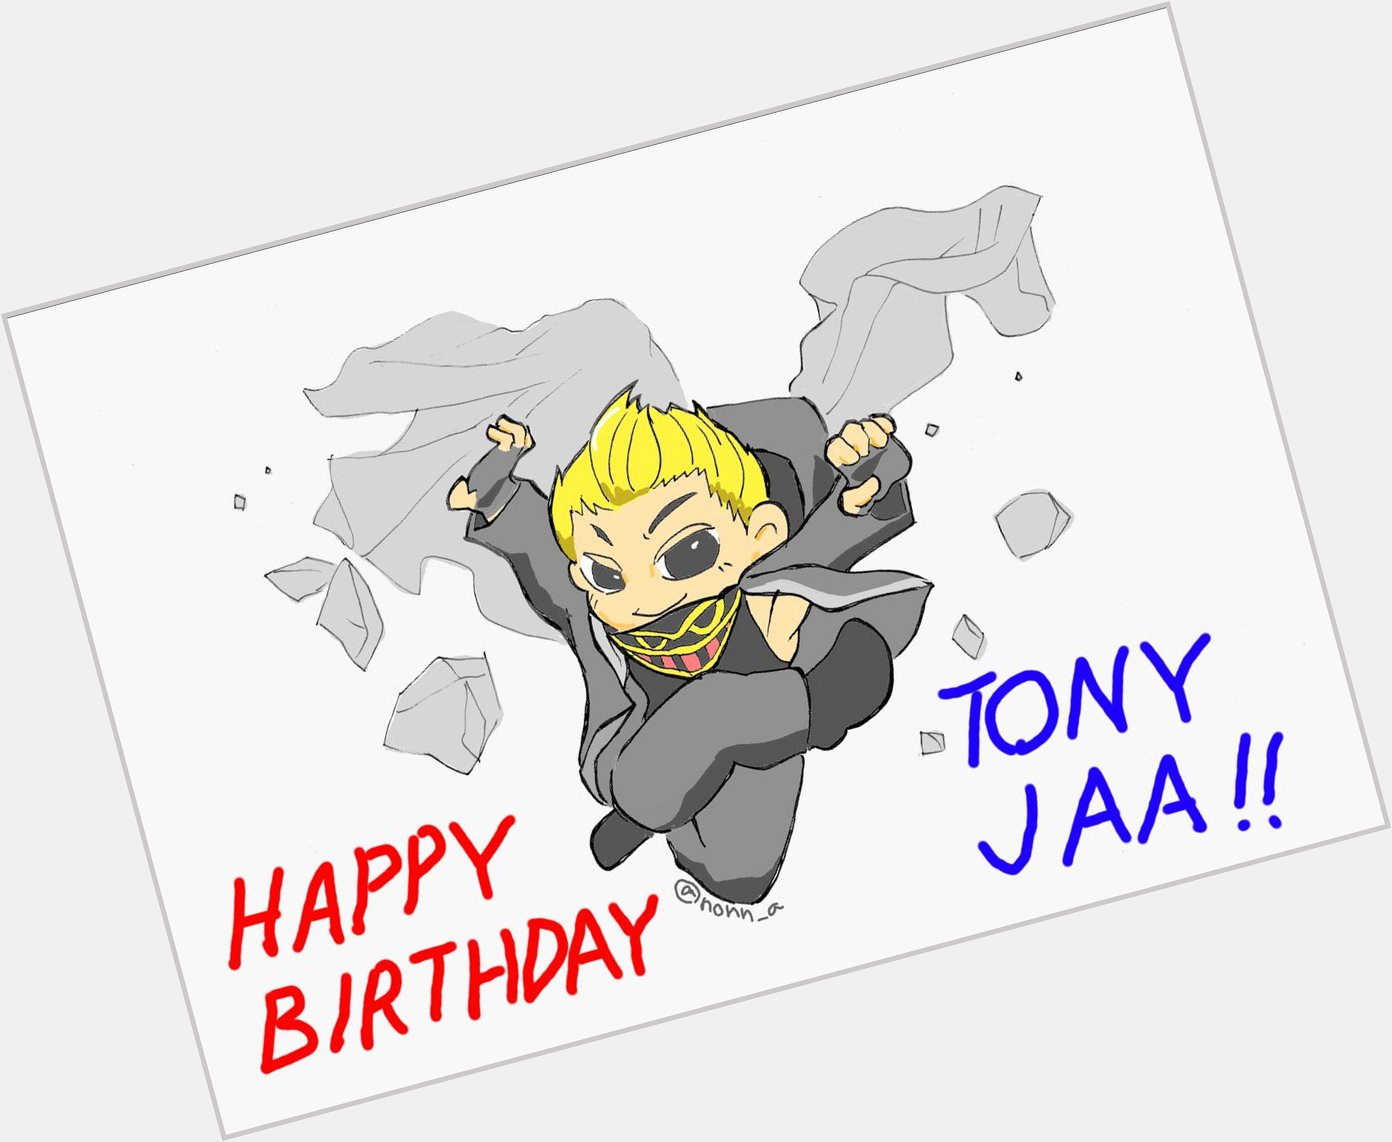                                       Happy Birthday Tony Jaa !! 